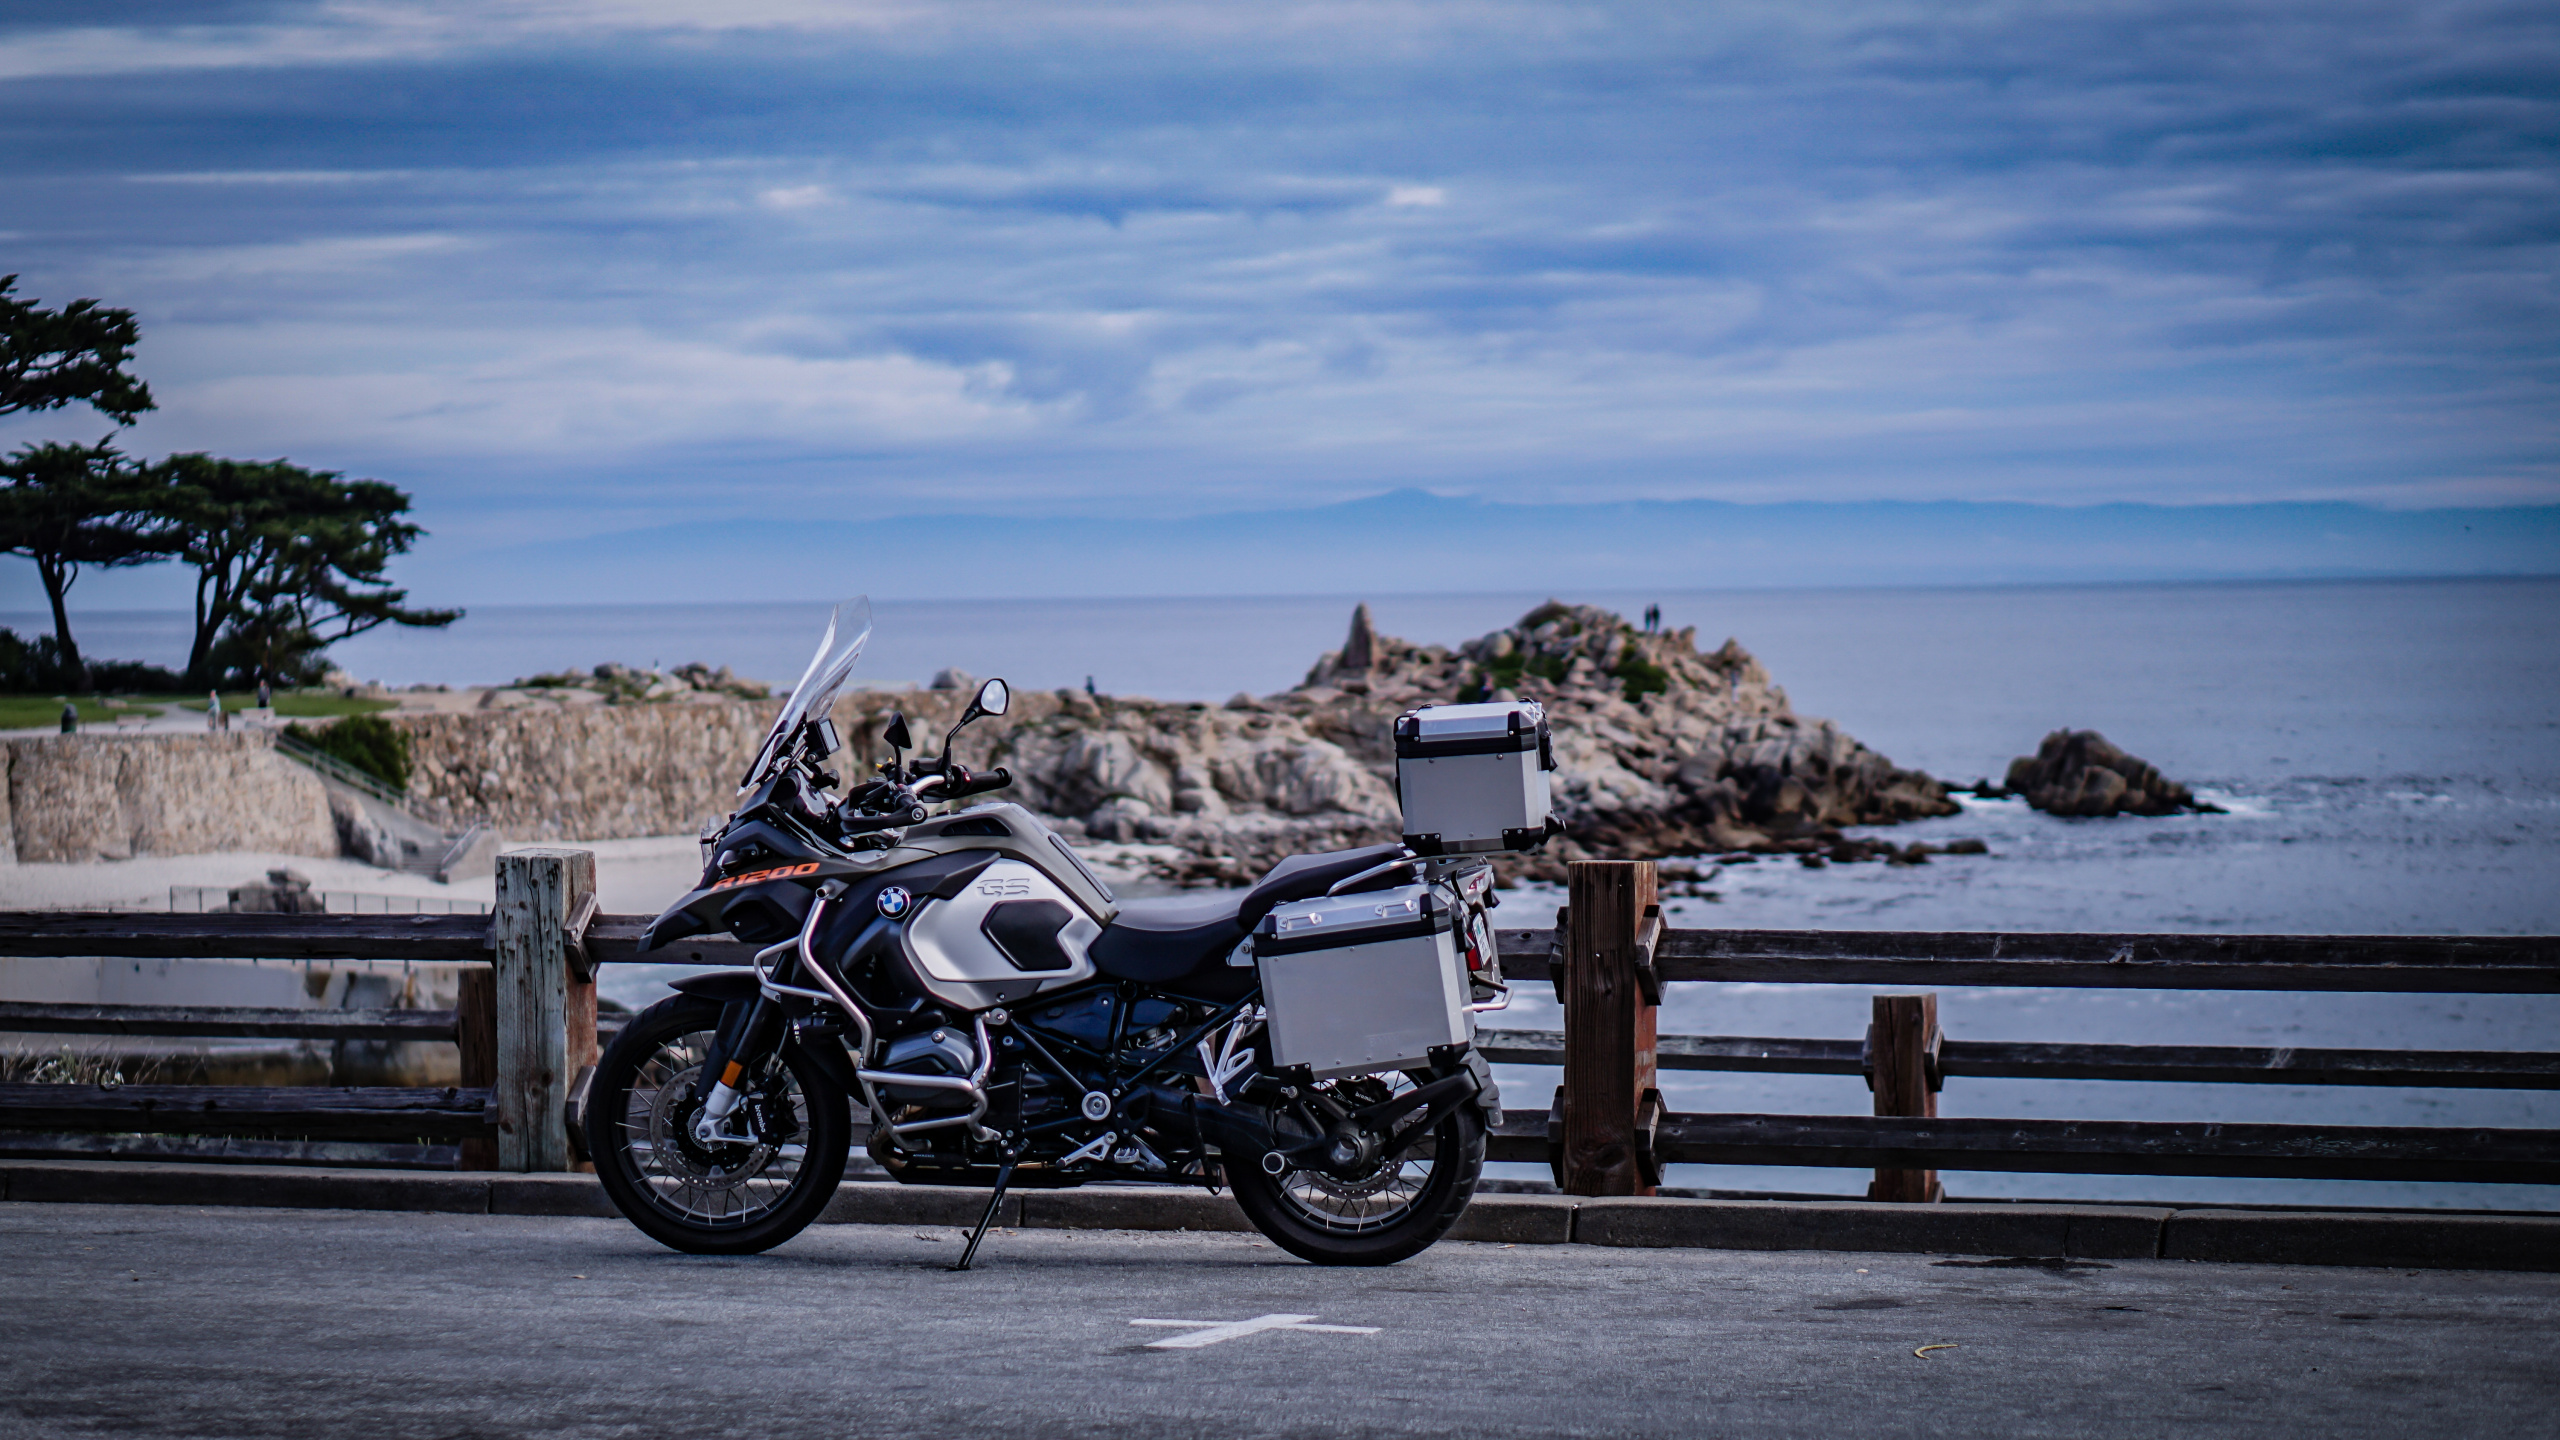 Motocicleta Negra y Plateada Estacionada en un Muelle de Madera Marrón Durante el Día. Wallpaper in 2560x1440 Resolution